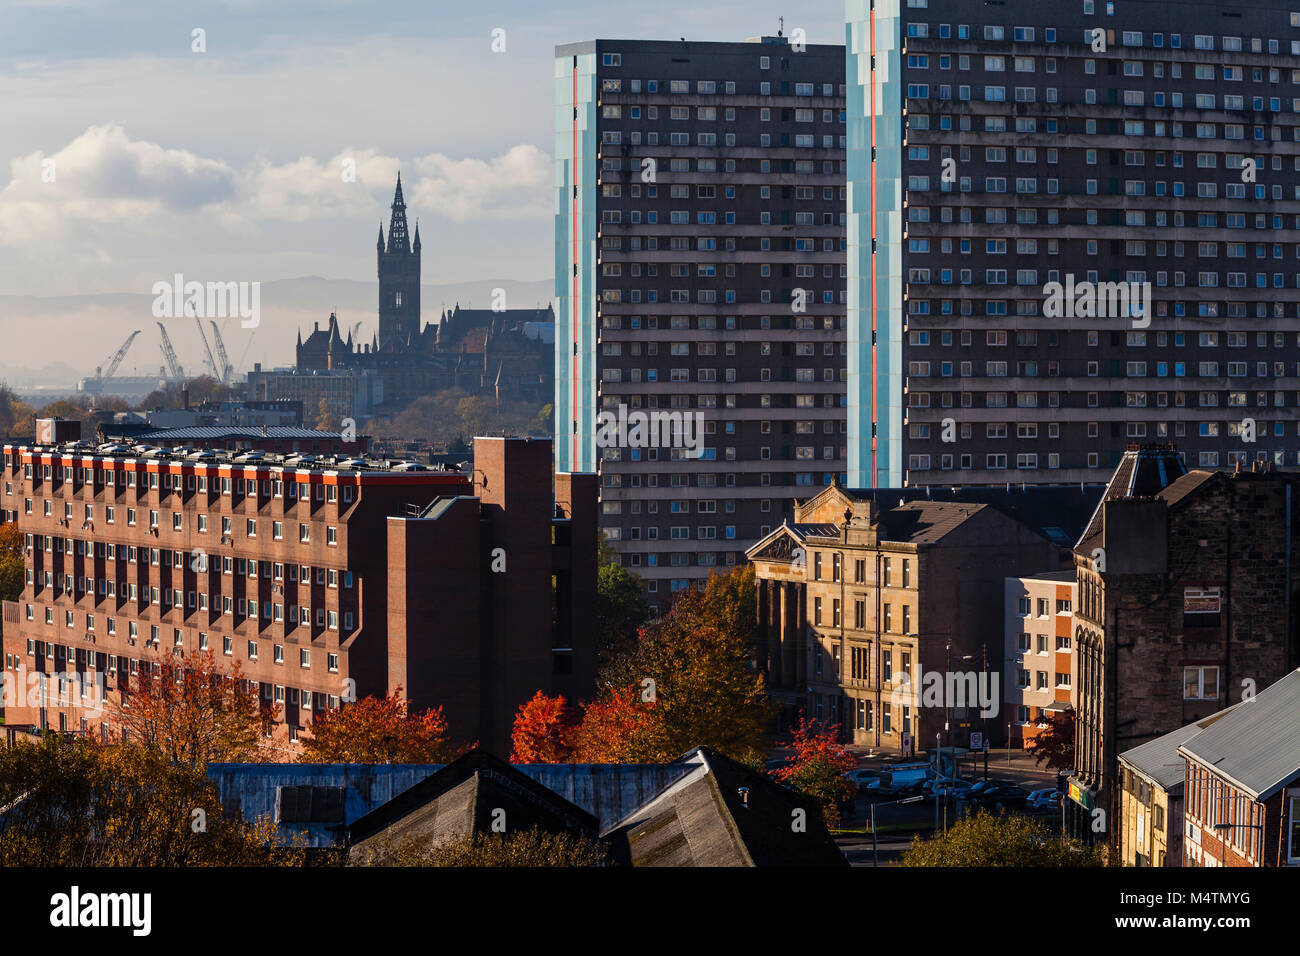 Blick auf die Skyline von Glasgow mit Blick auf den Glockenturm der University of Glasgow mit Werftkranen im Hintergrund, Schottland, Großbritannien Stockfoto